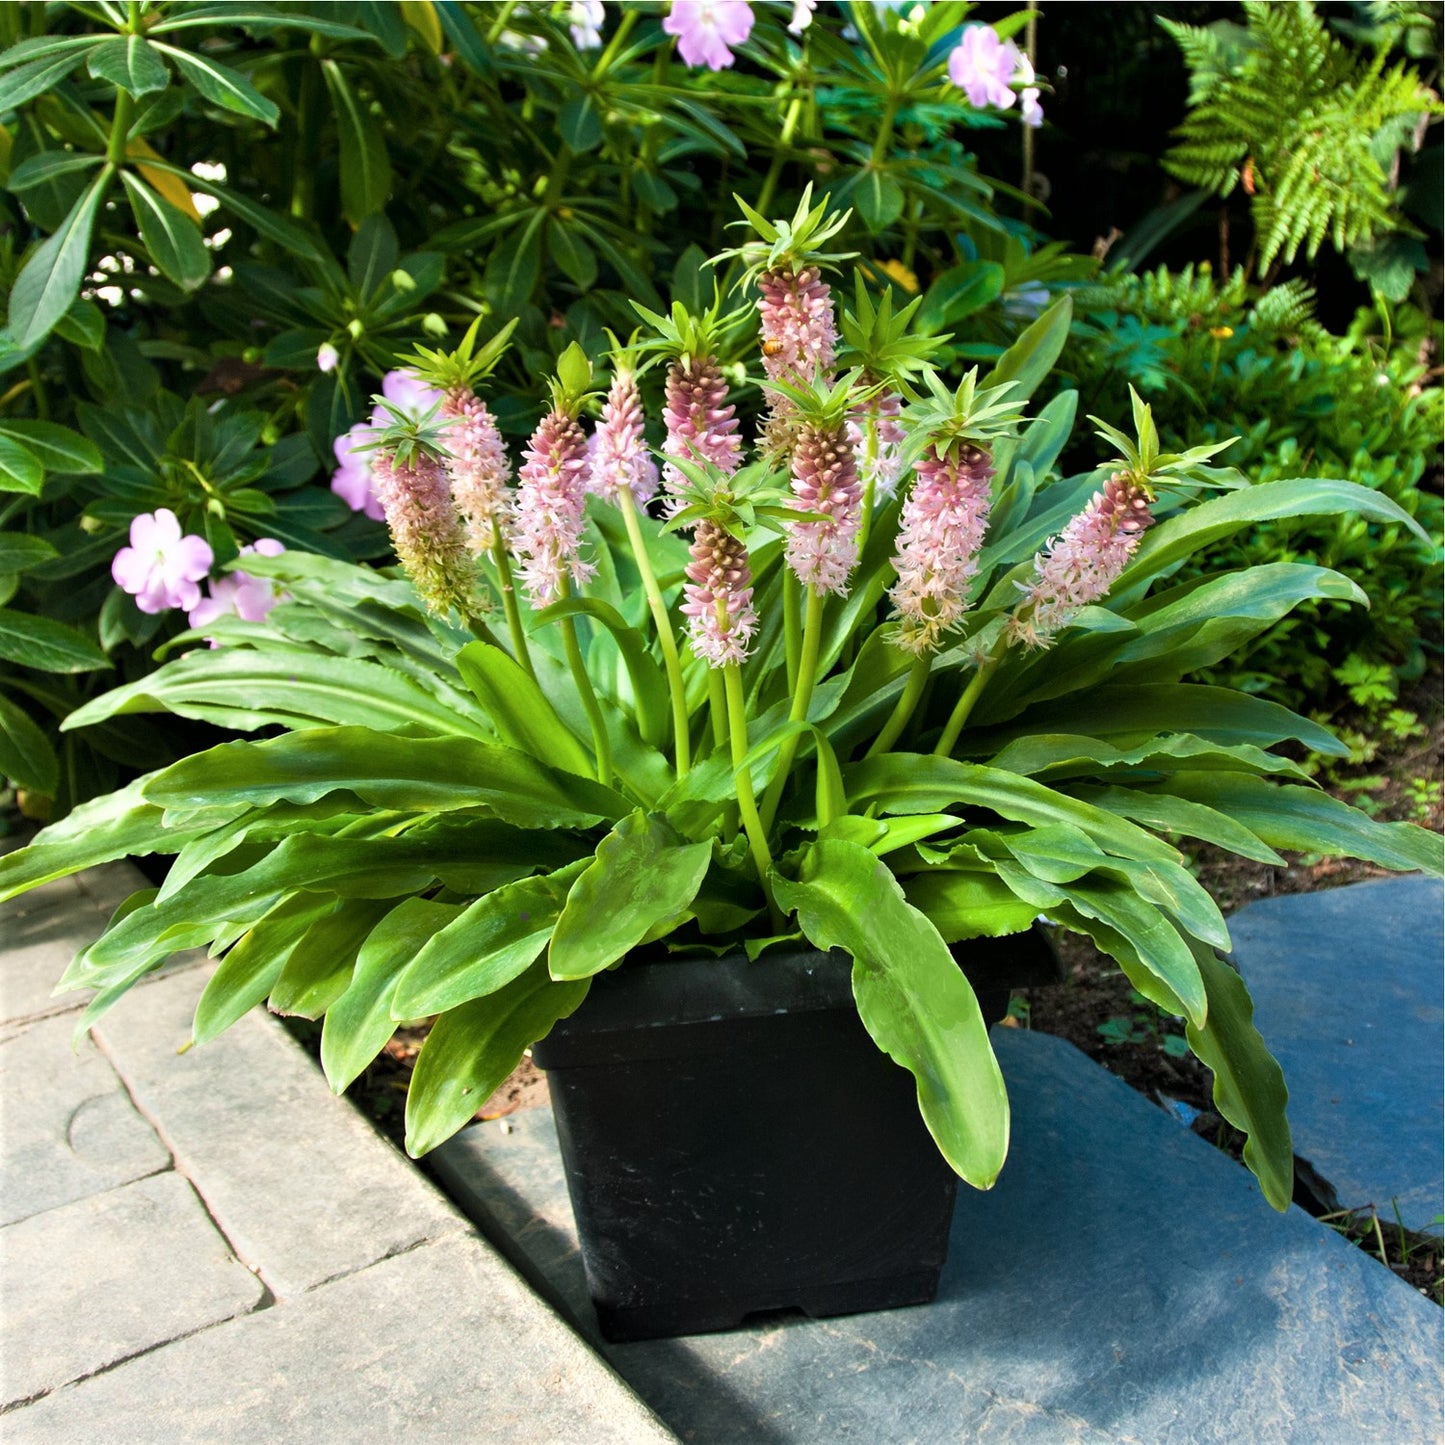 A Flourishing Potted "Nani" Pineapple Lily